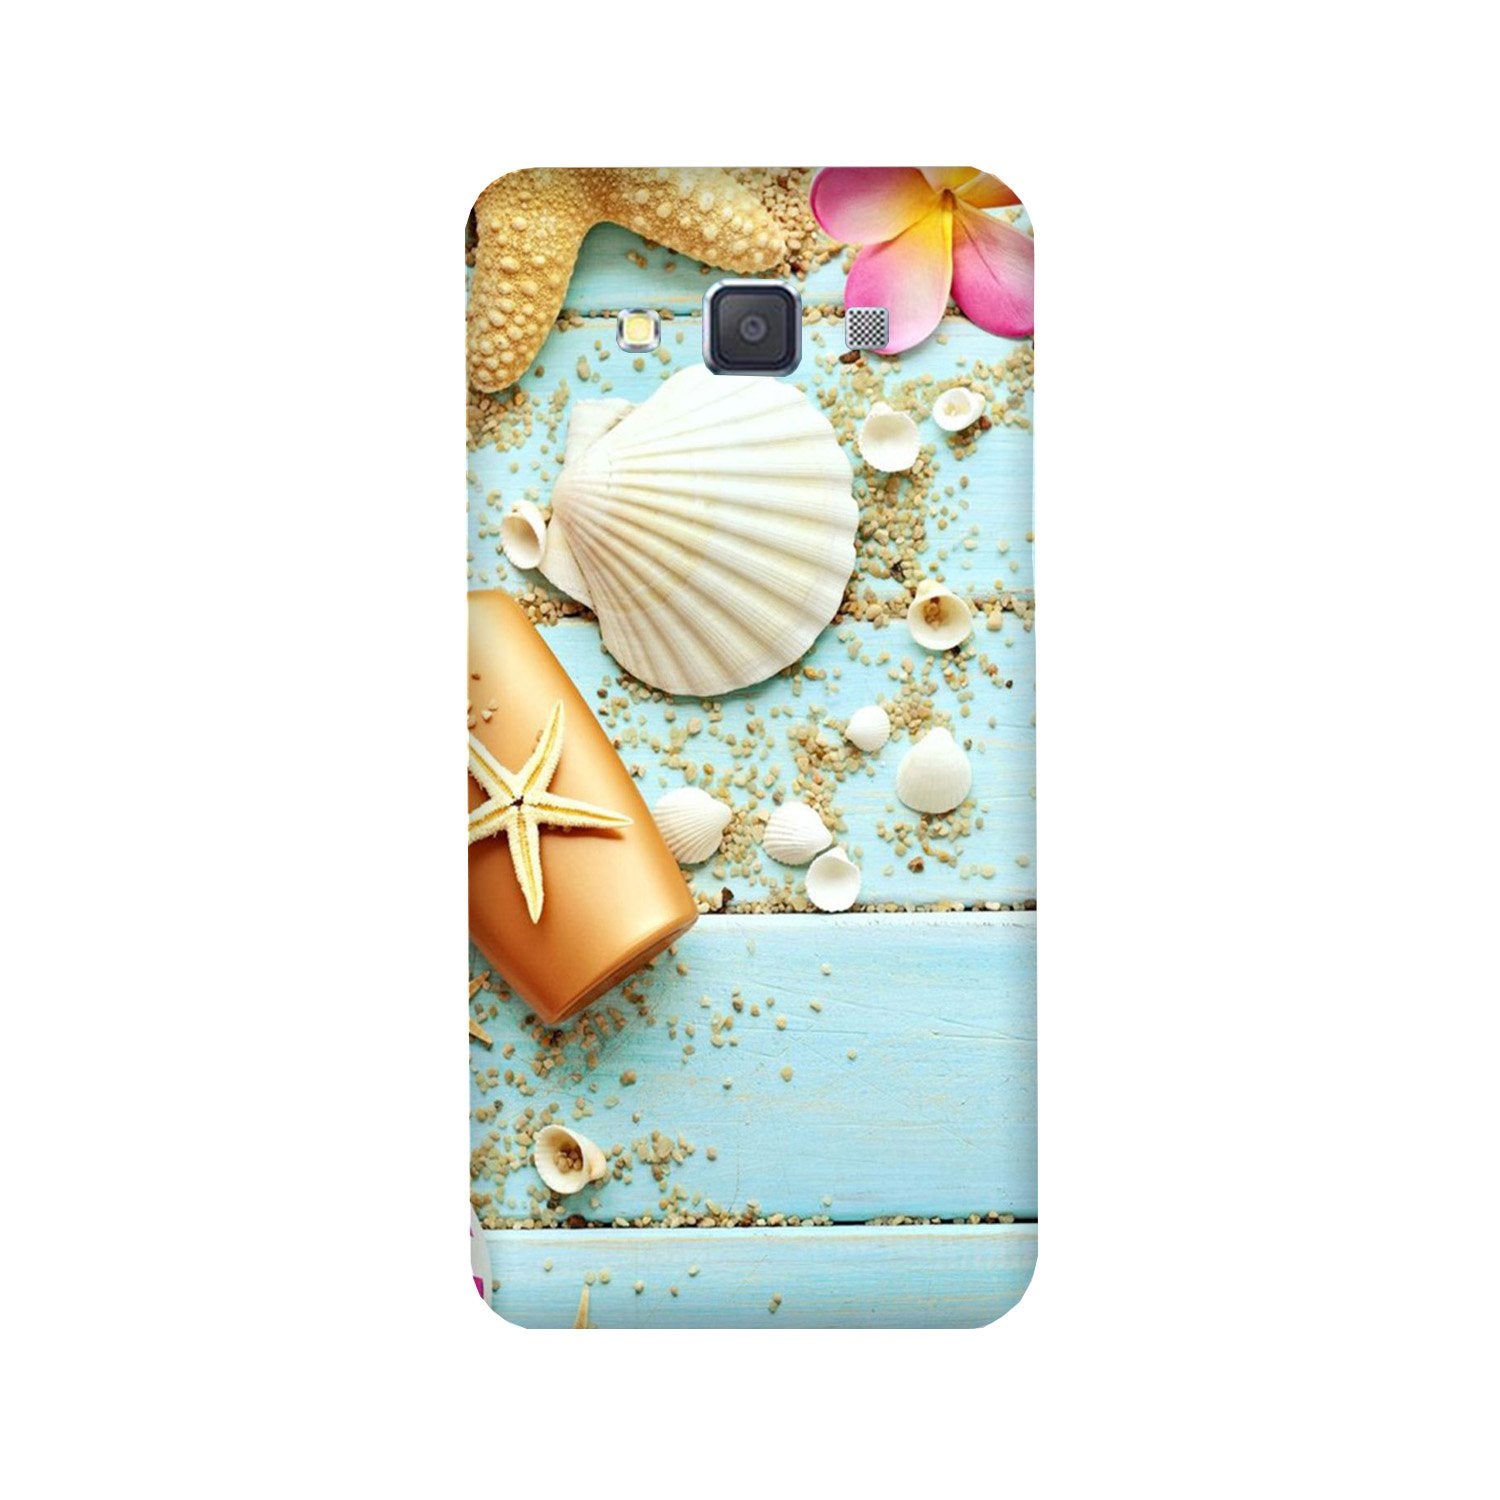 Sea Shells Case for Galaxy E7